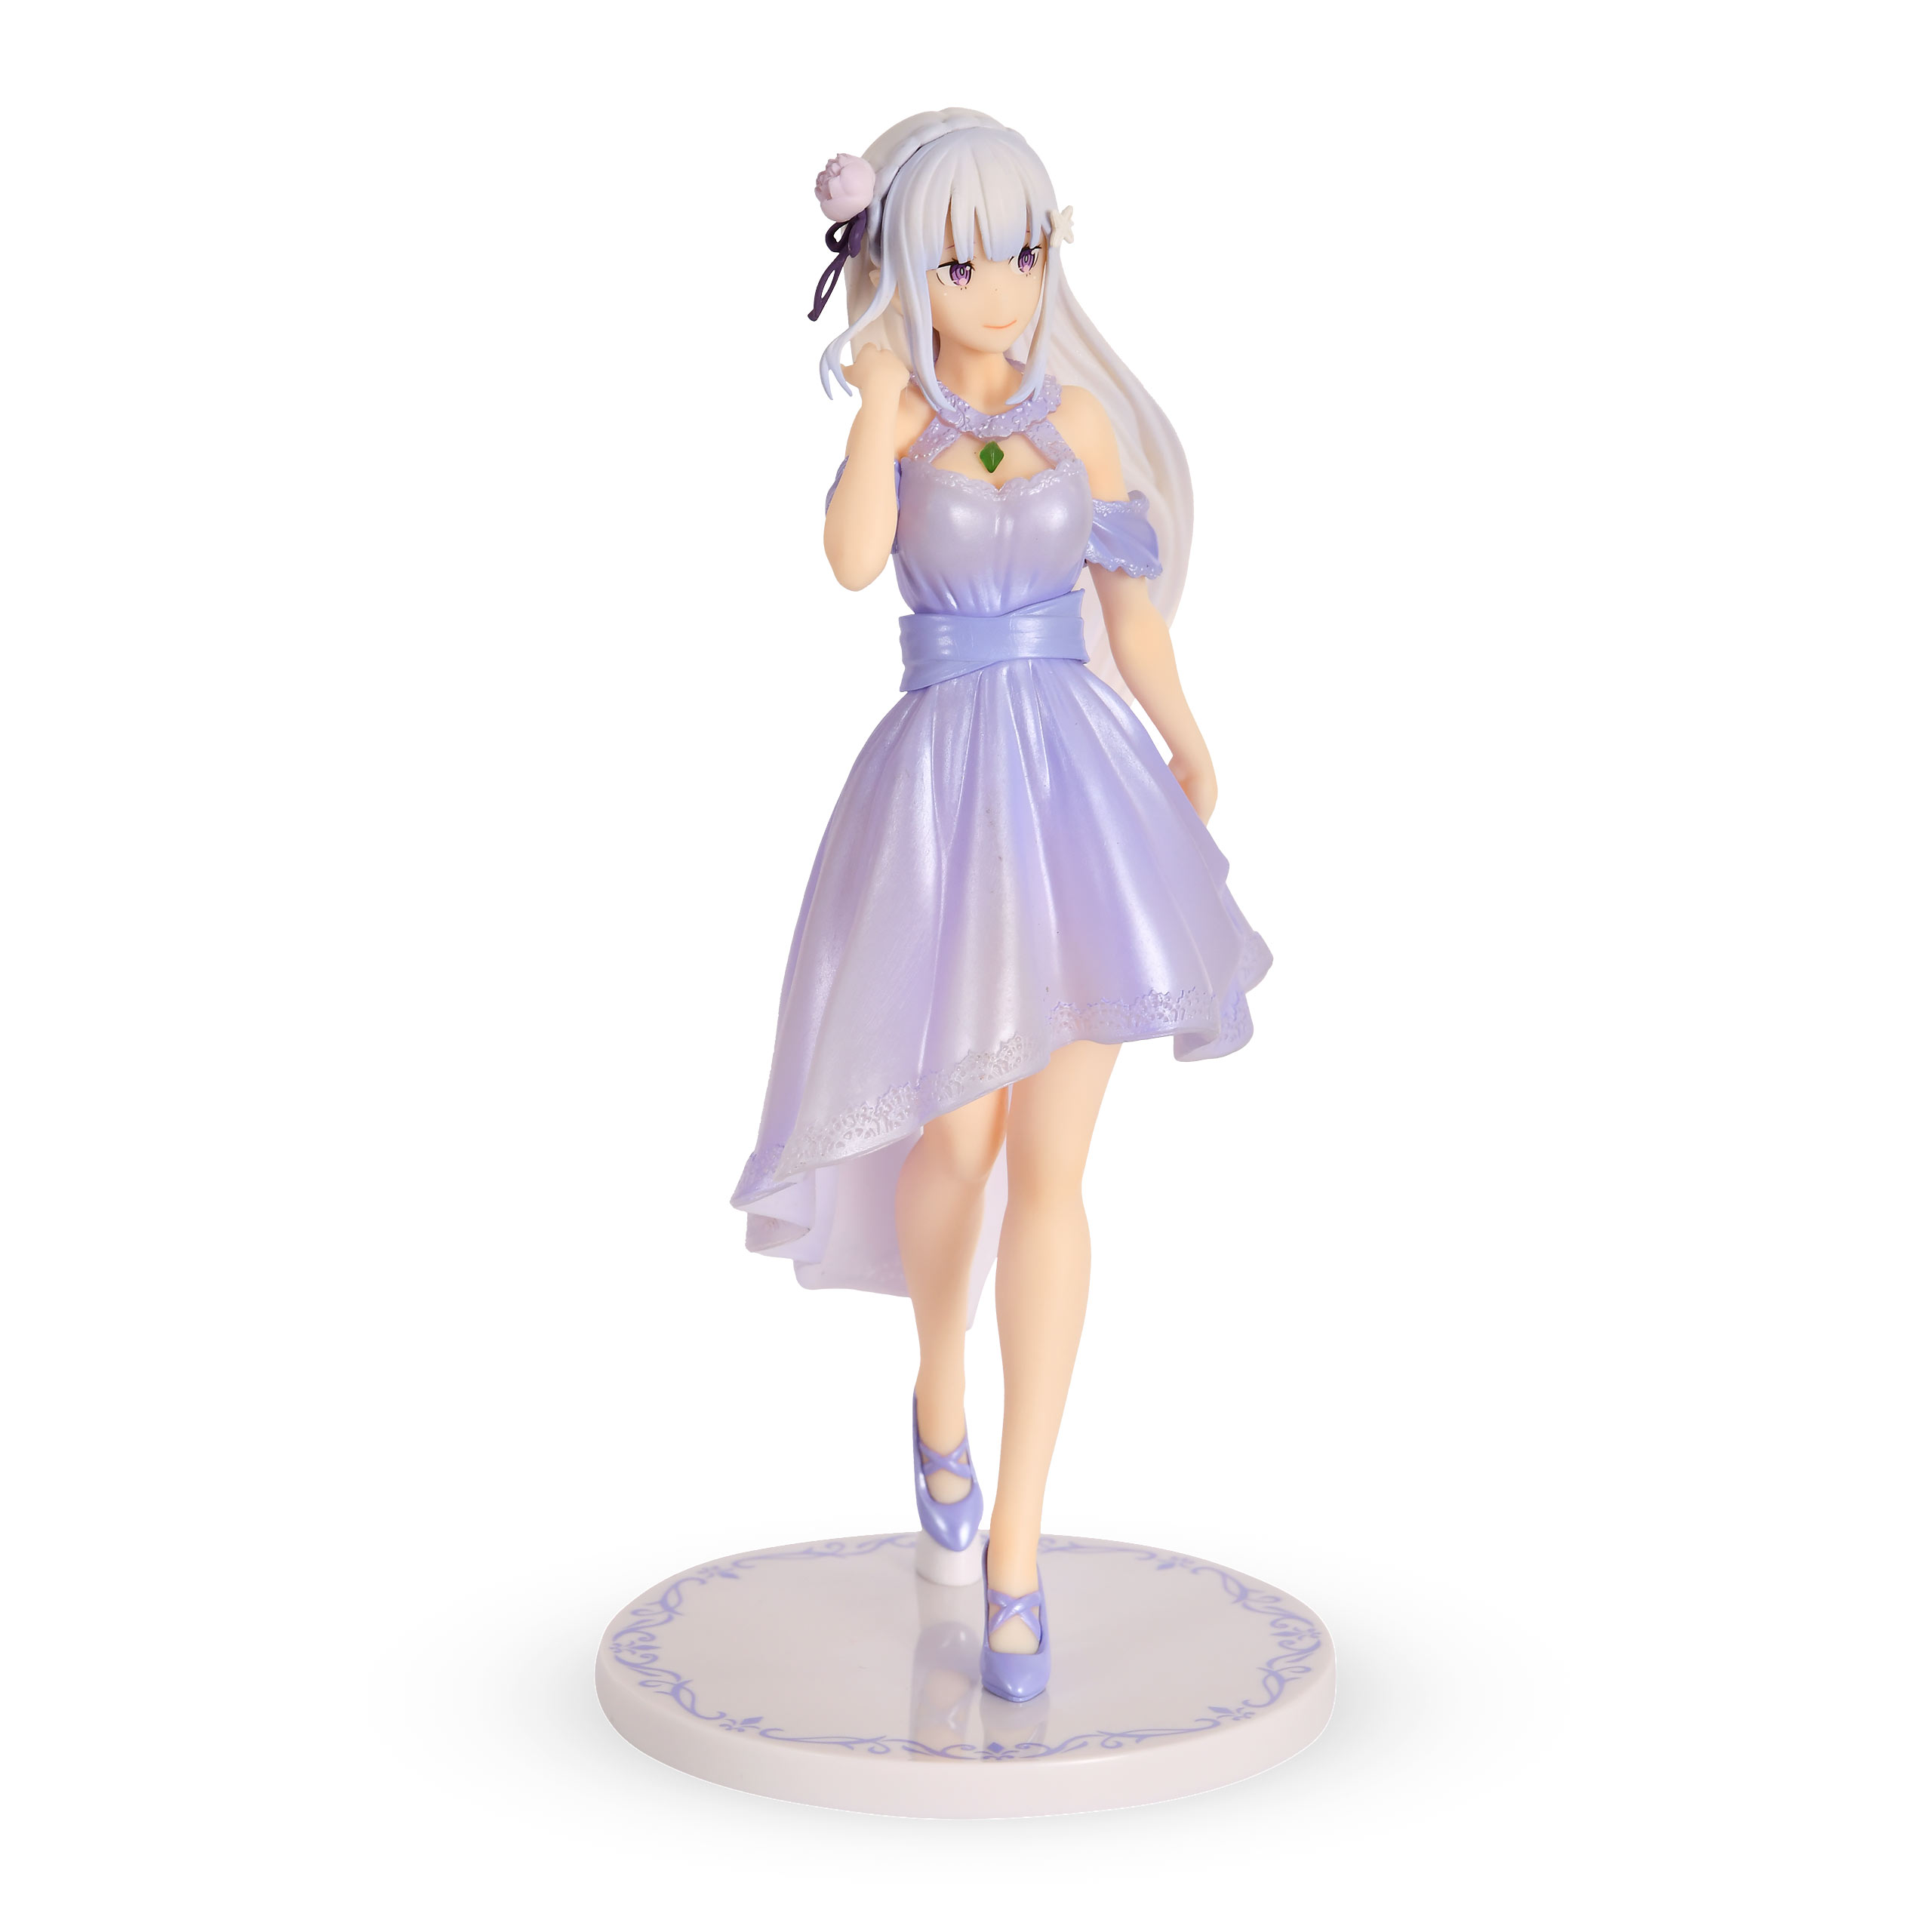 Re:Zero - Emilia Dreaming Future Story Figurine